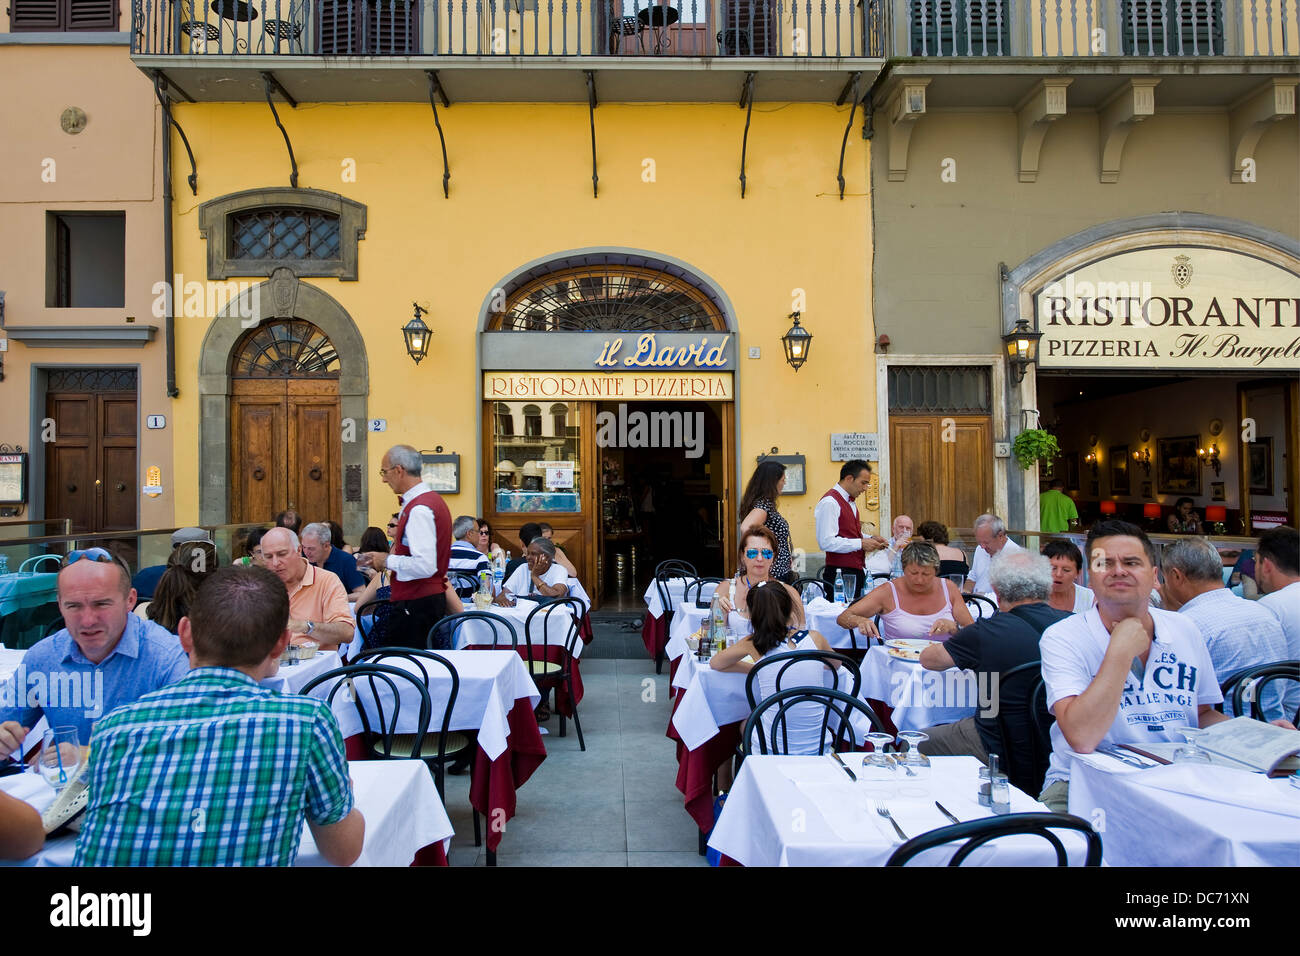 Italy, Tuscany, Florence, Piazza della Signoria, Signoria town square, Il David restaurant Stock Photo